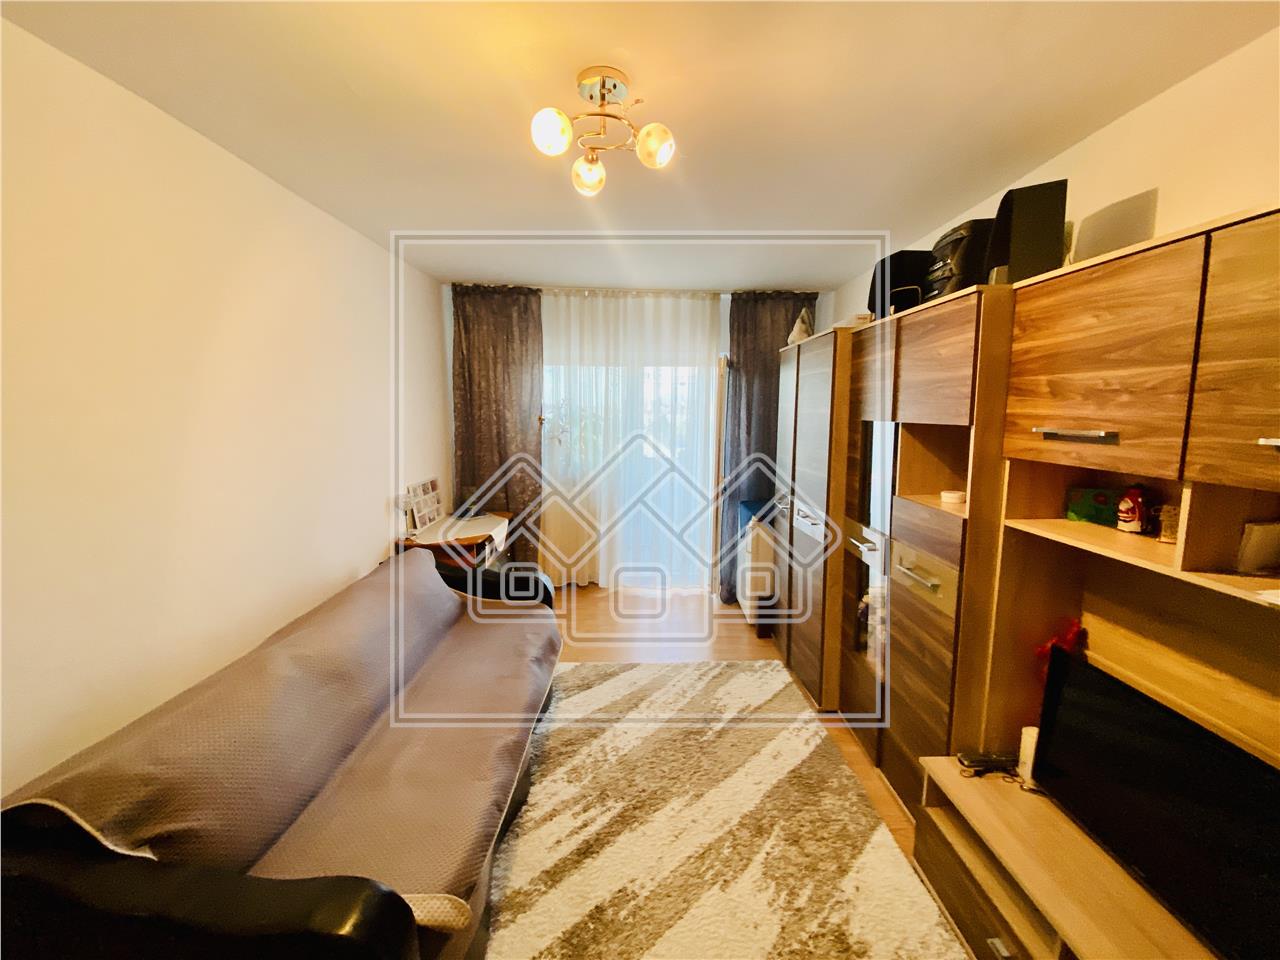 Apartament de vanzare in Sibiu - 3 camere si balcon - Zona Rahova